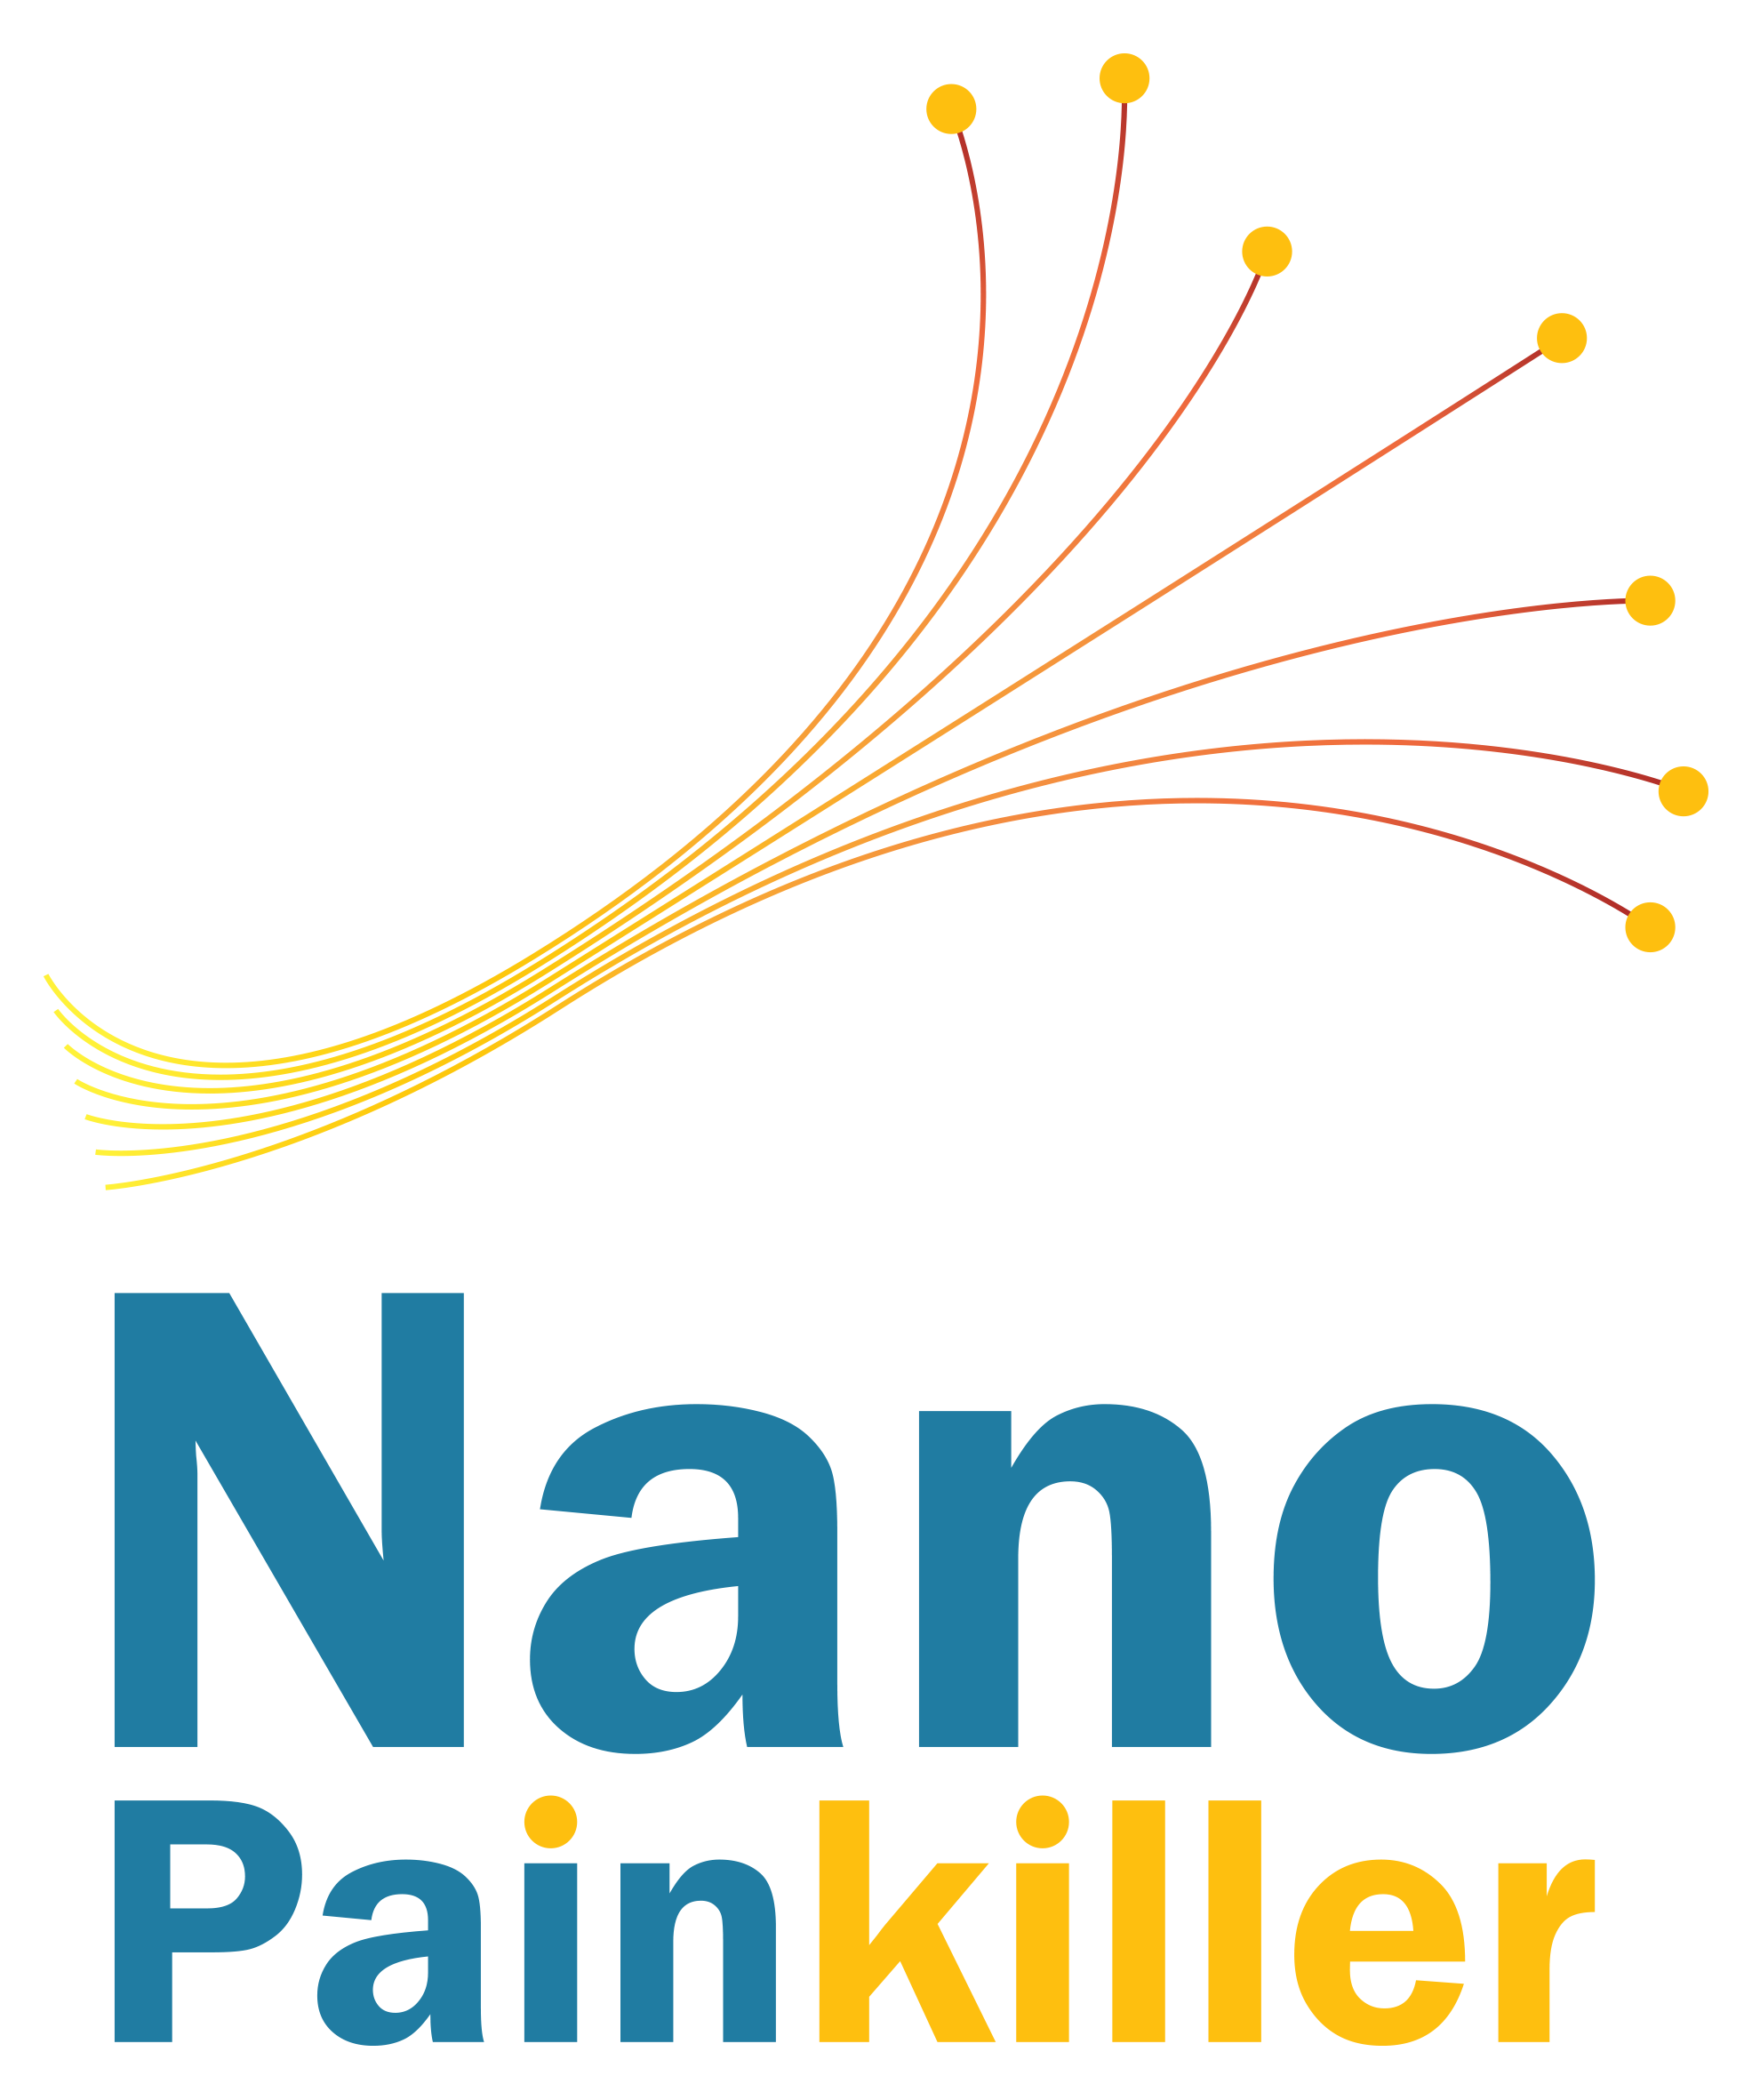 Nano Pain Killer